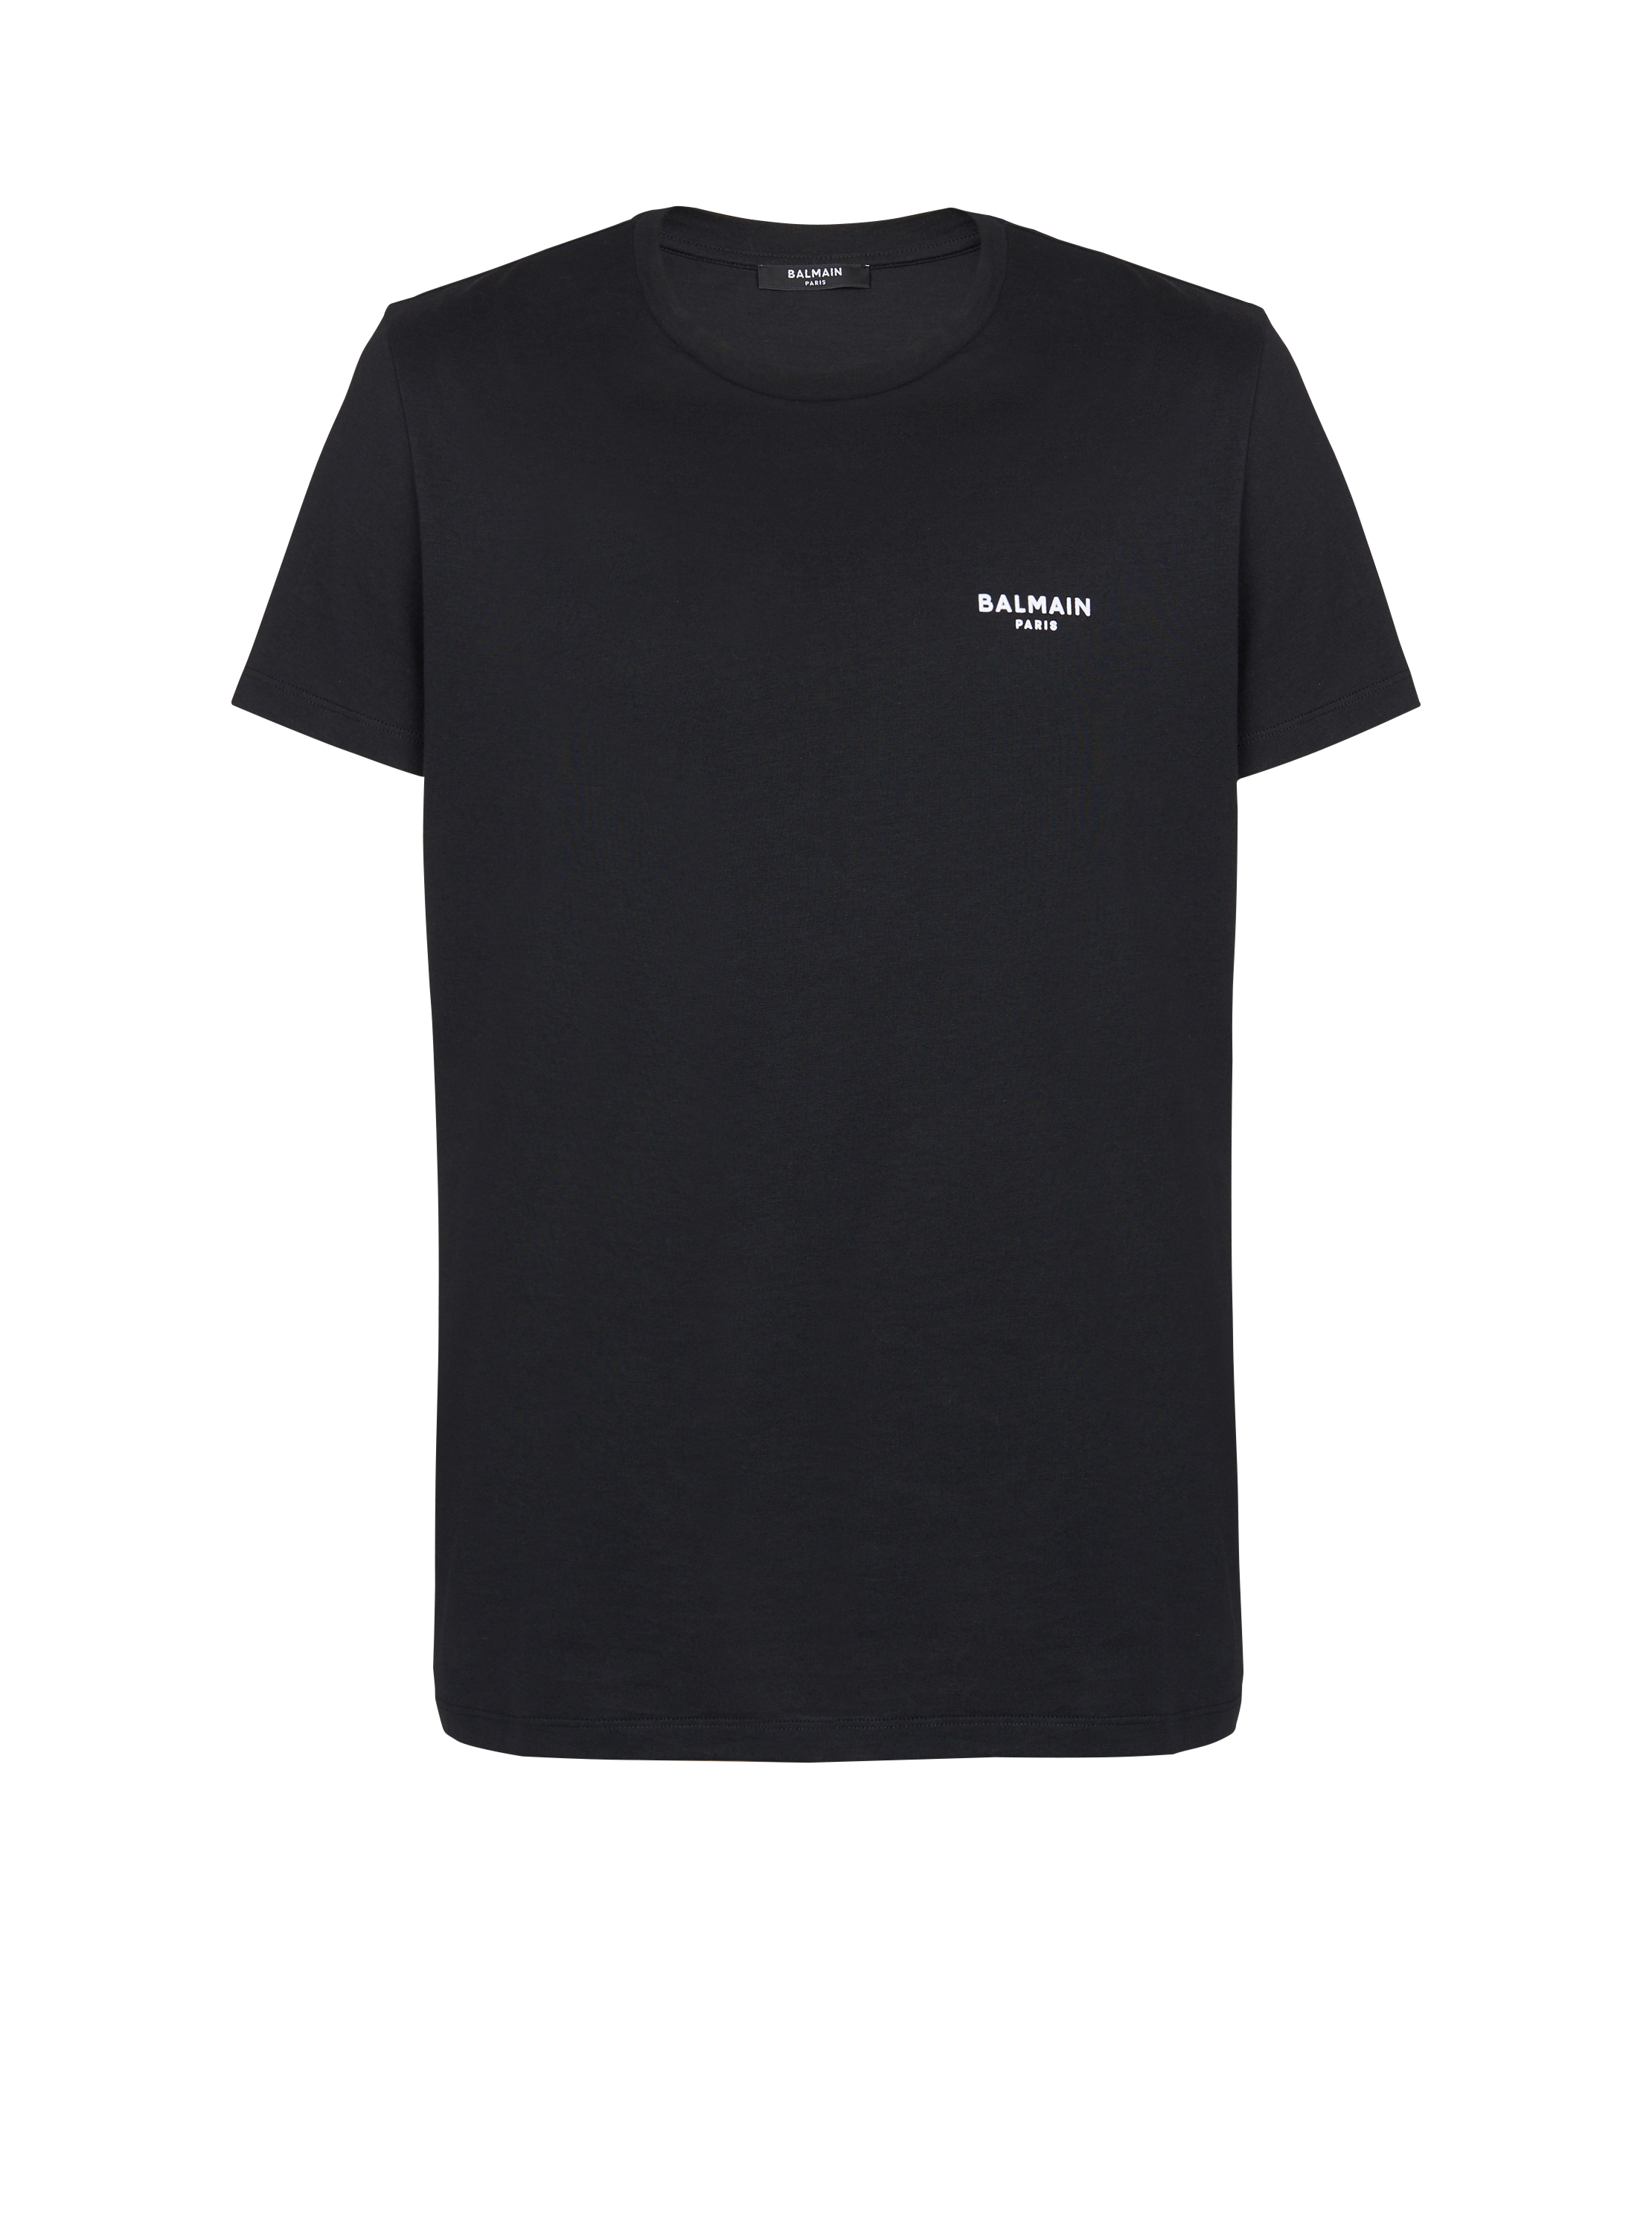 Camiseta con logotipo de Balmain serigrafiado, negro, hi-res